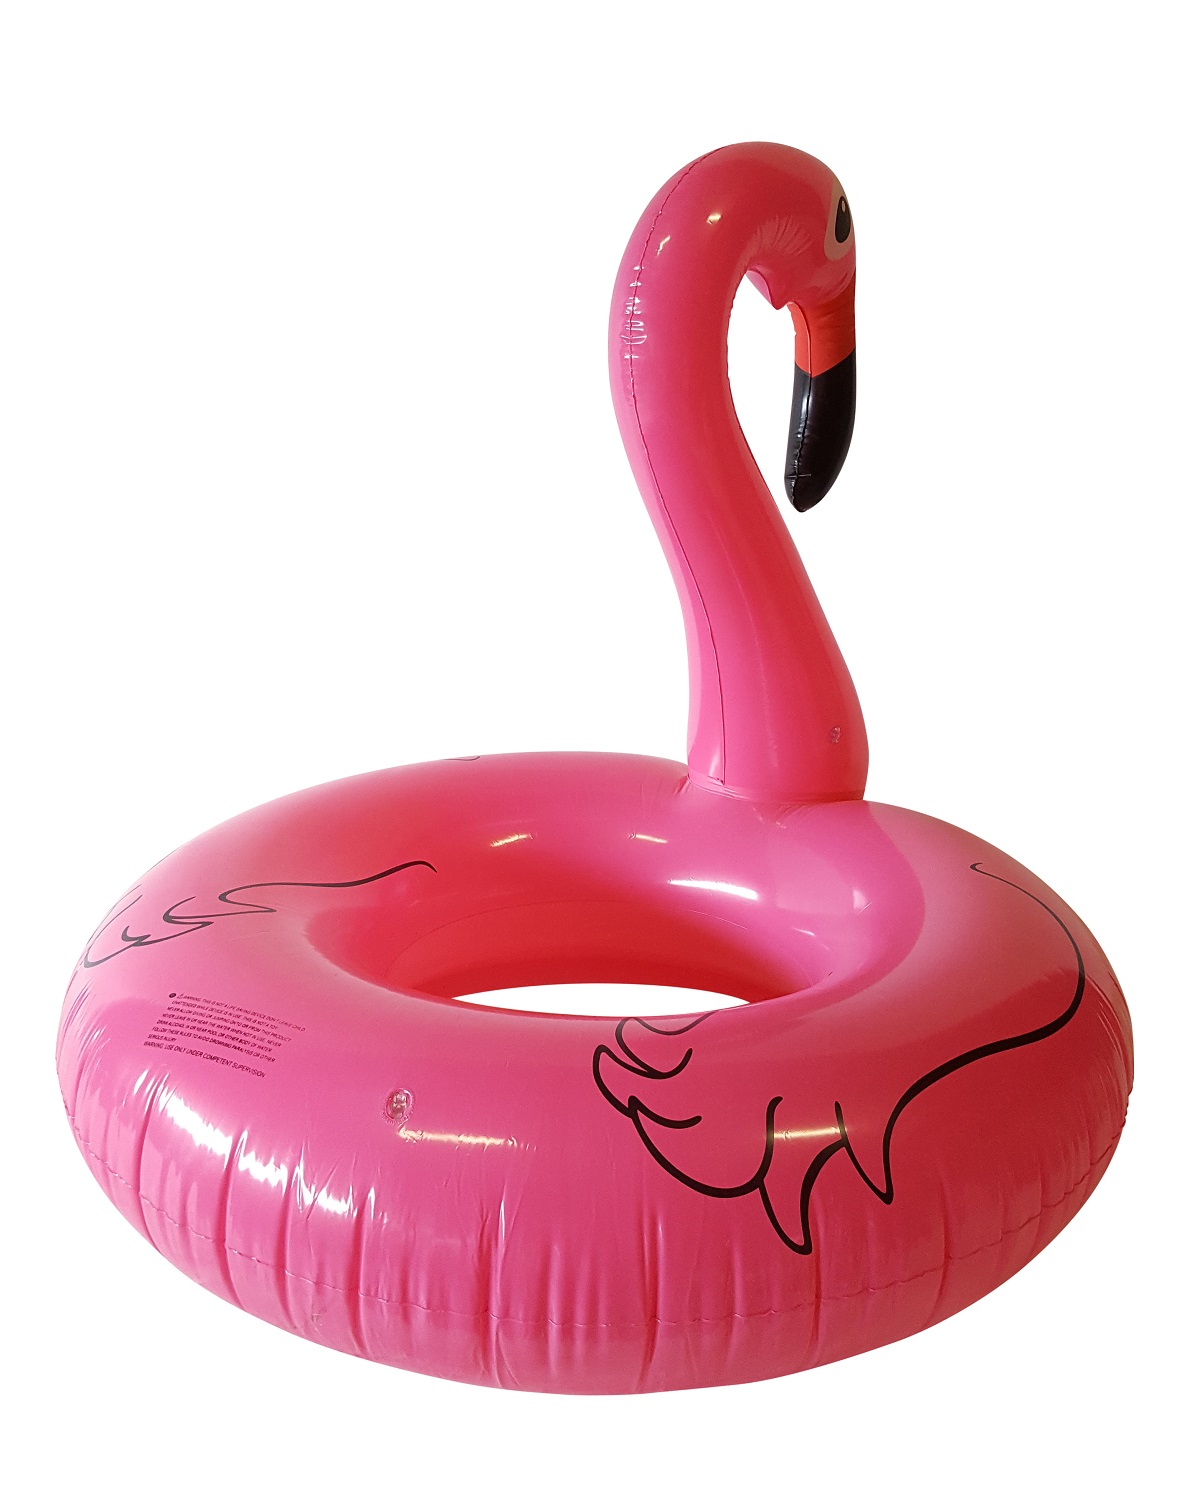 Platteland Humaan liberaal Grote Opblaasbare Flamingo kopen? Natuurlijk bij Kunstpalm.nl